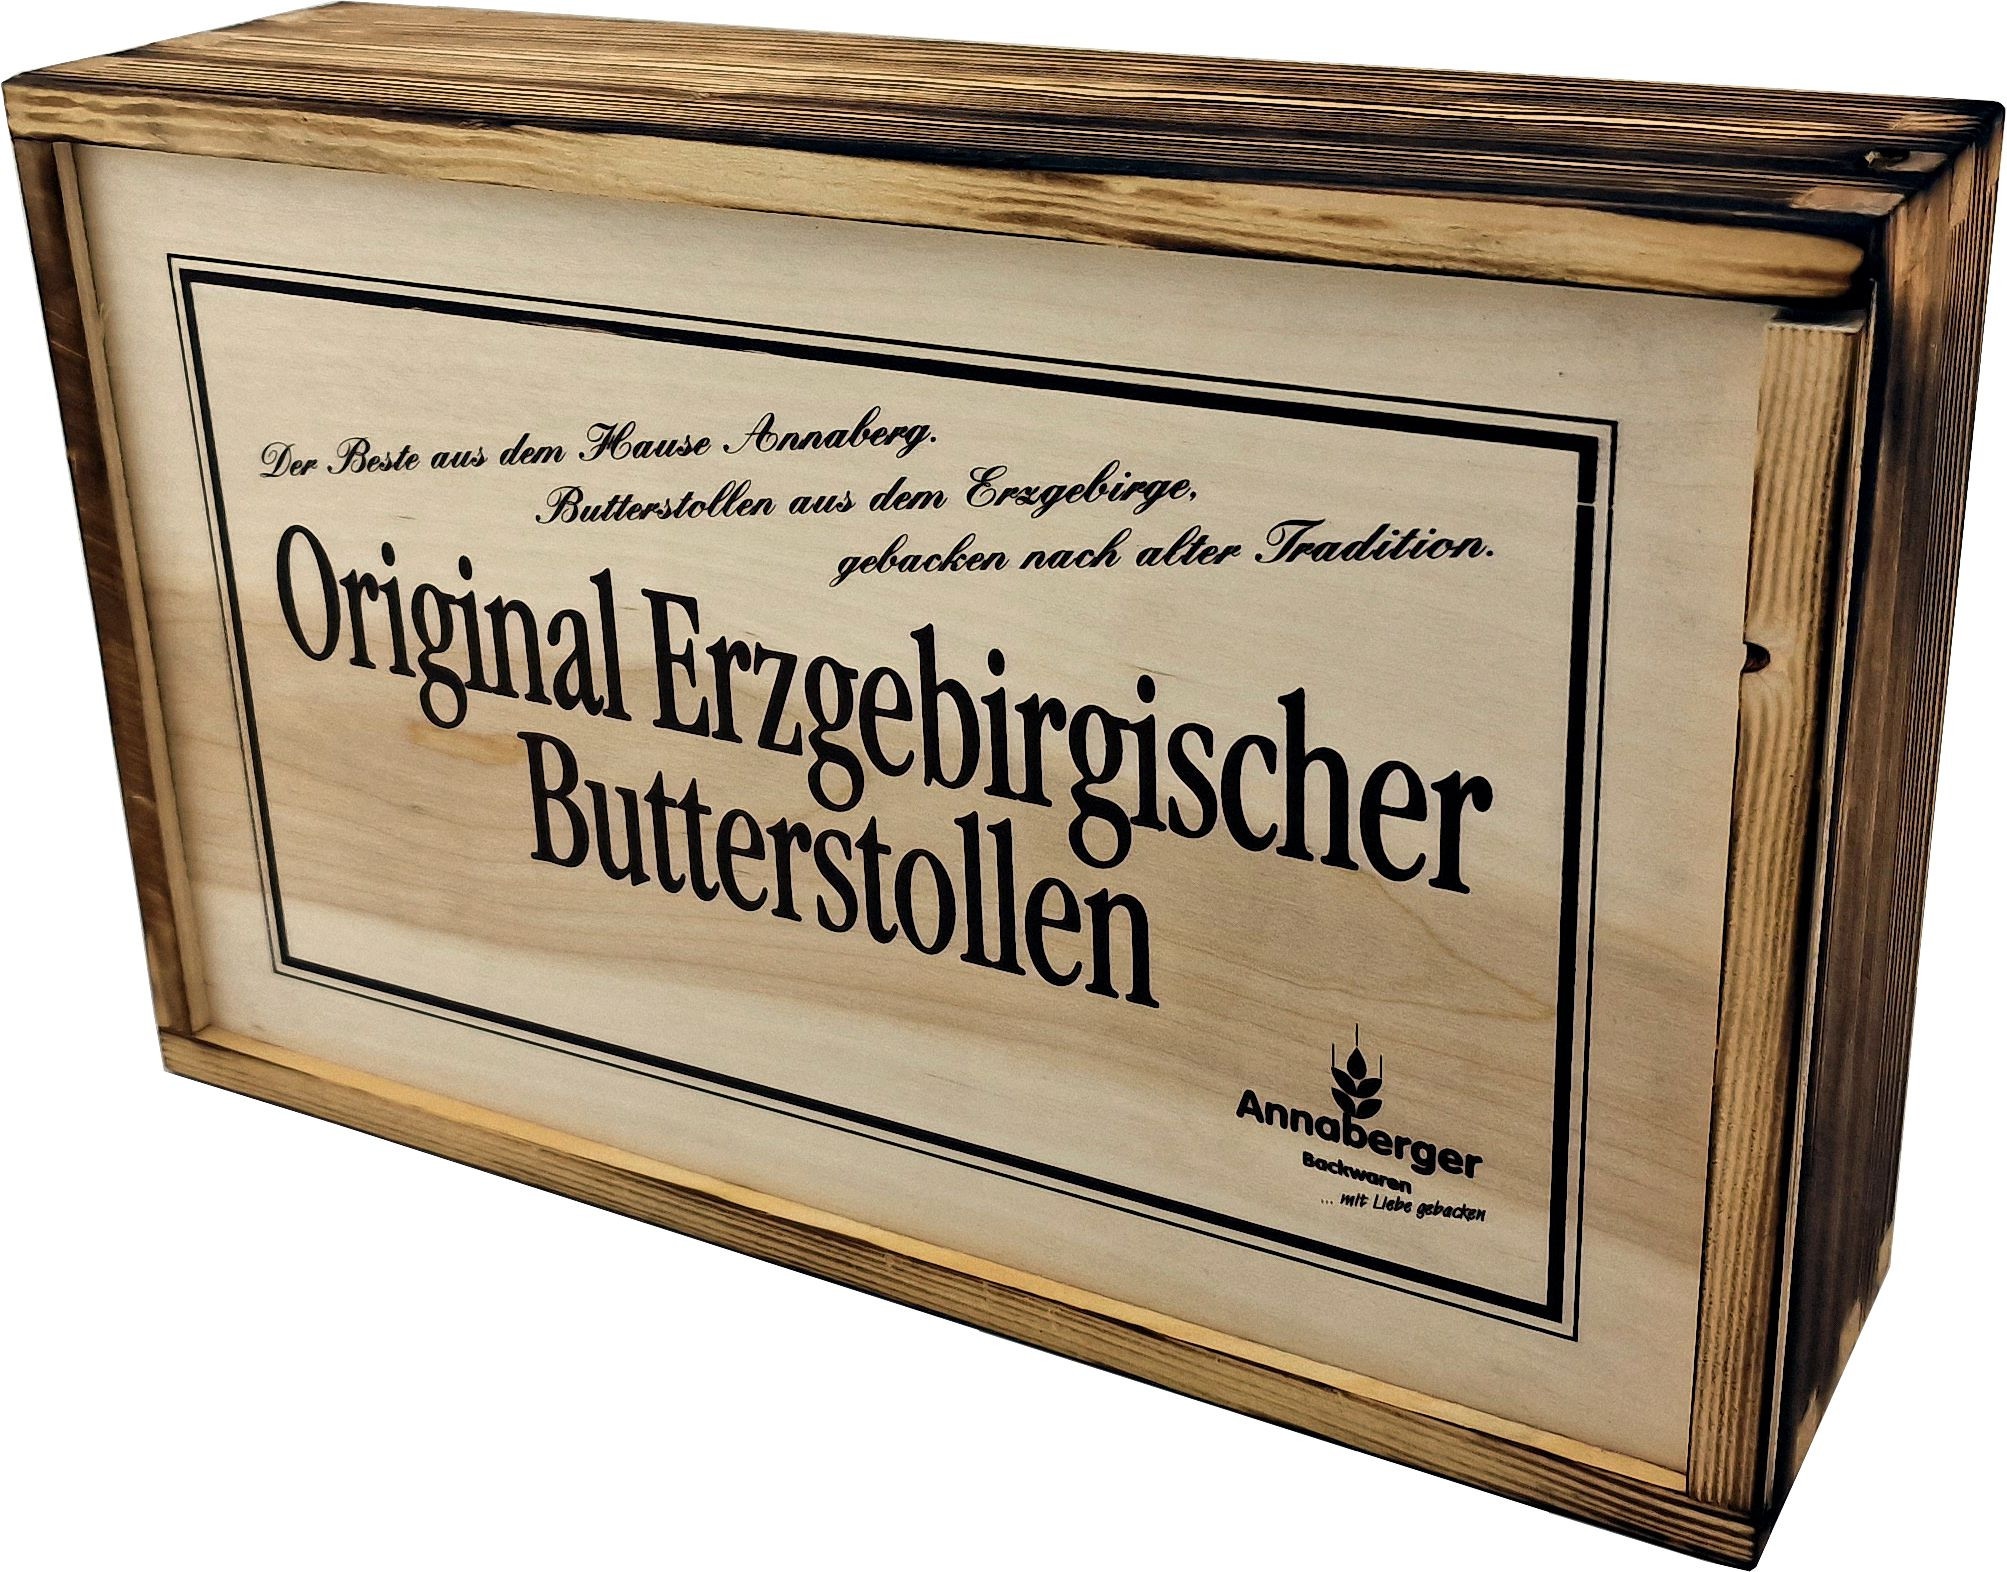 Original Erzgebirgischer Butterstollen in der Holzkiste